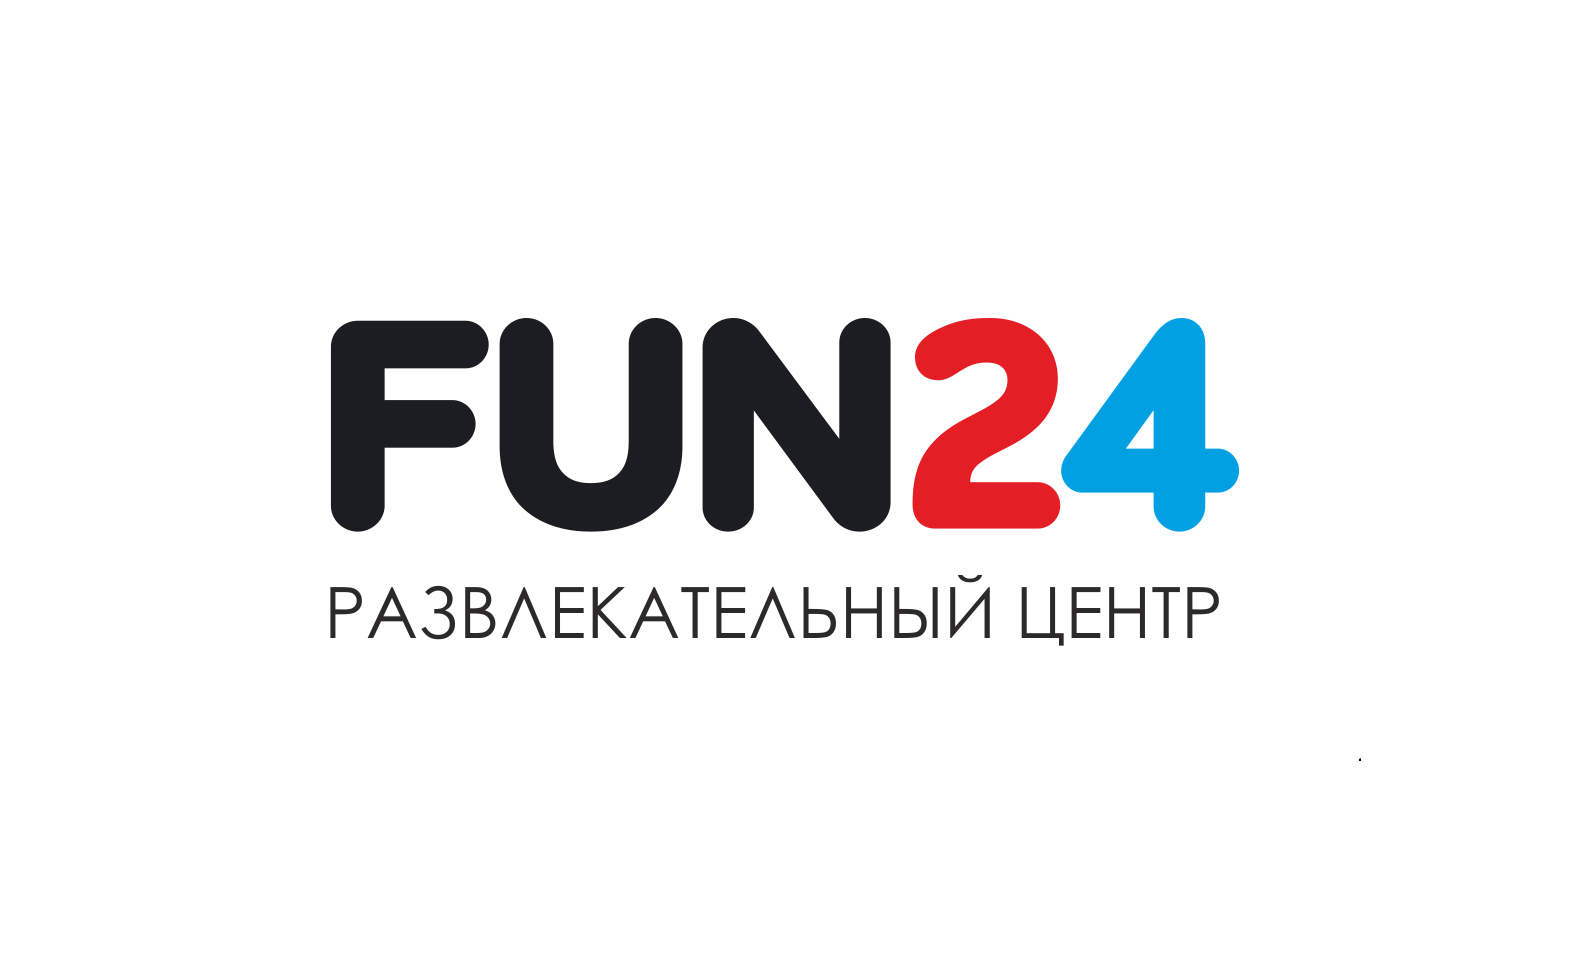 Fun казань. Развлекательный центр «fun24». Fun24 Казань. Развлекательный центр в Казани фан 24. Развлекательный центр логотип.